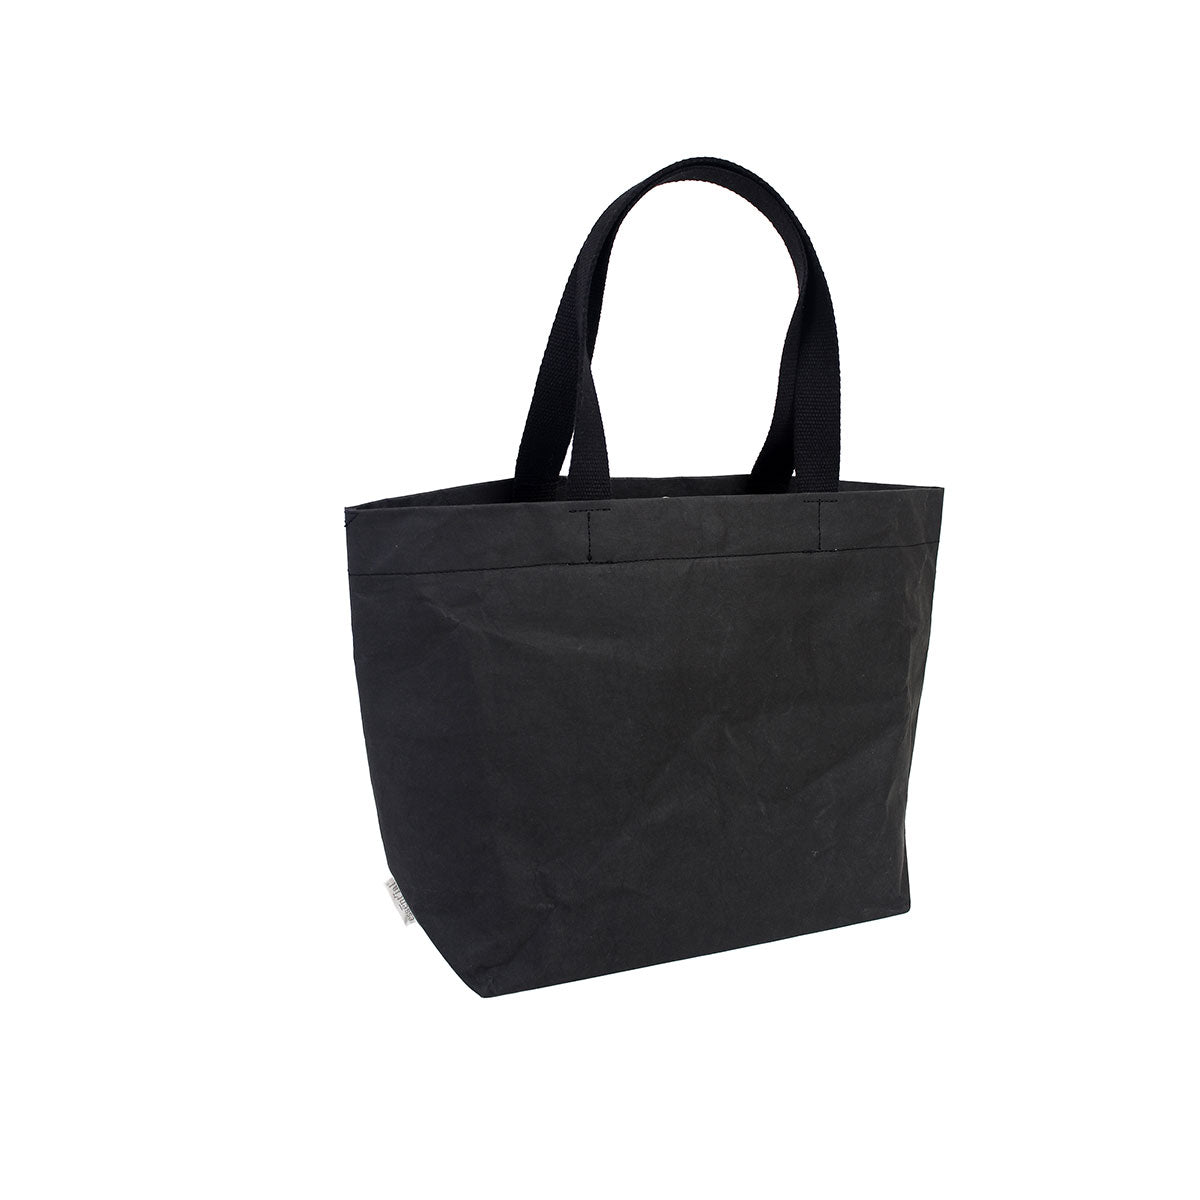 Multi-purpose bag, Essential, Il sacco borsa mini in black